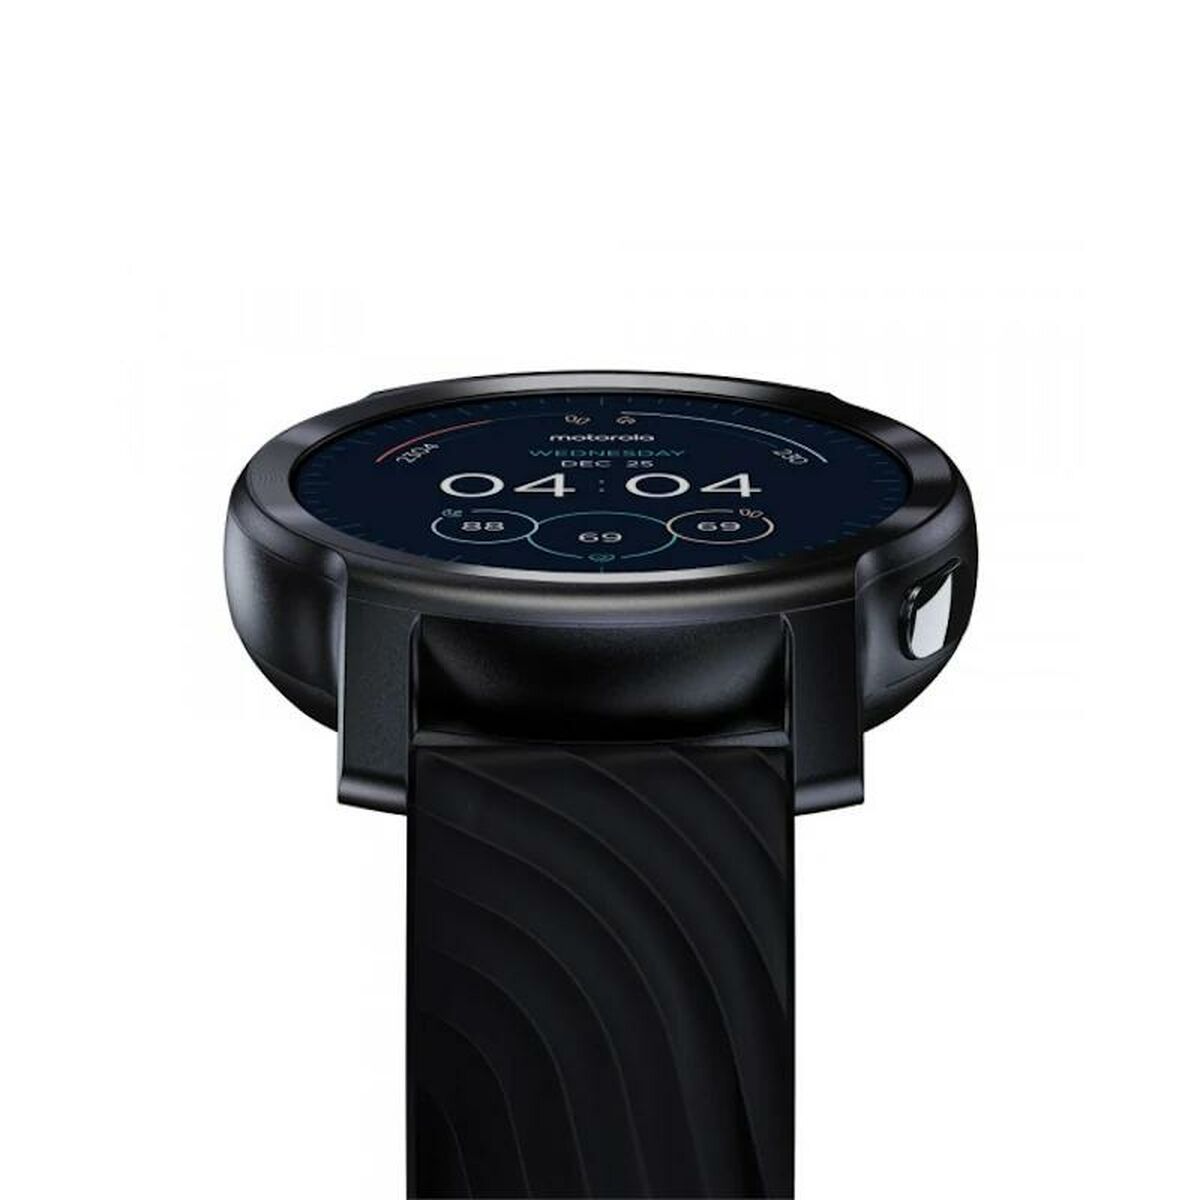 Montre intelligente Motorola Watch 100 1,3" 5 atm 355 mAh Noir (Reconditionné A)